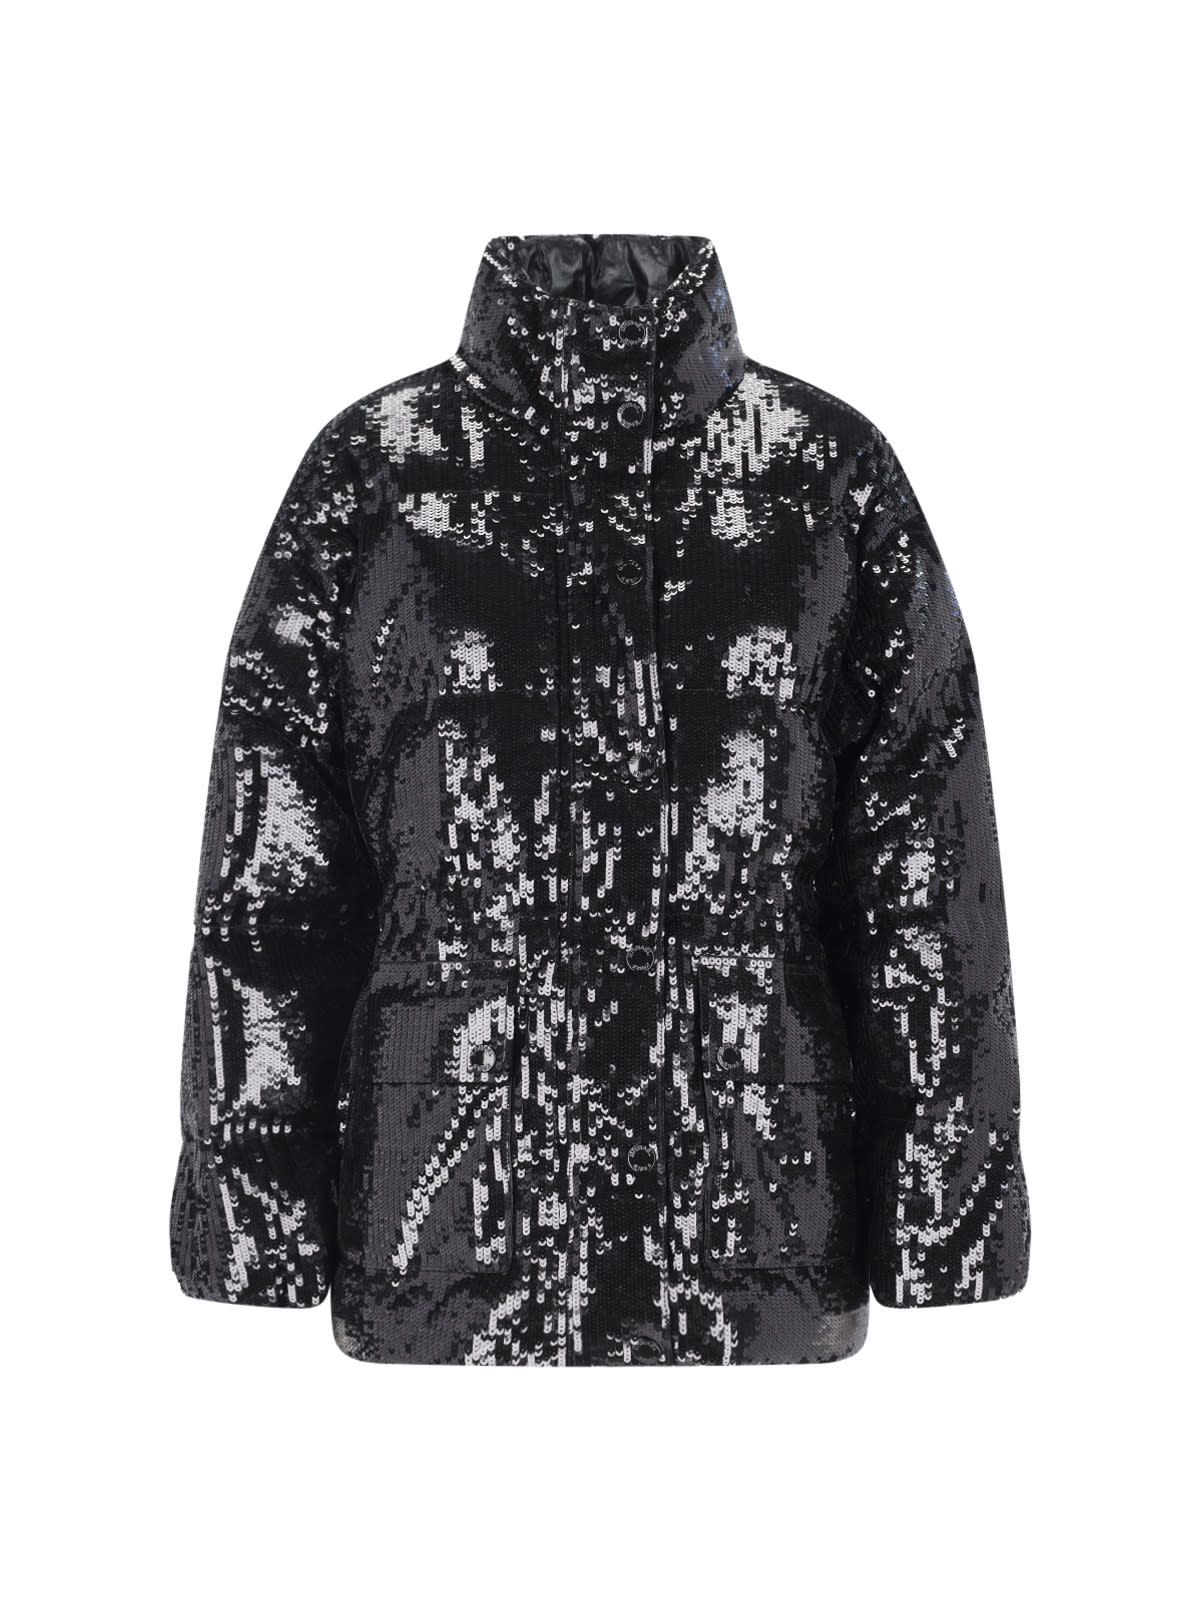 michael kors sequin embellished puffer jacket